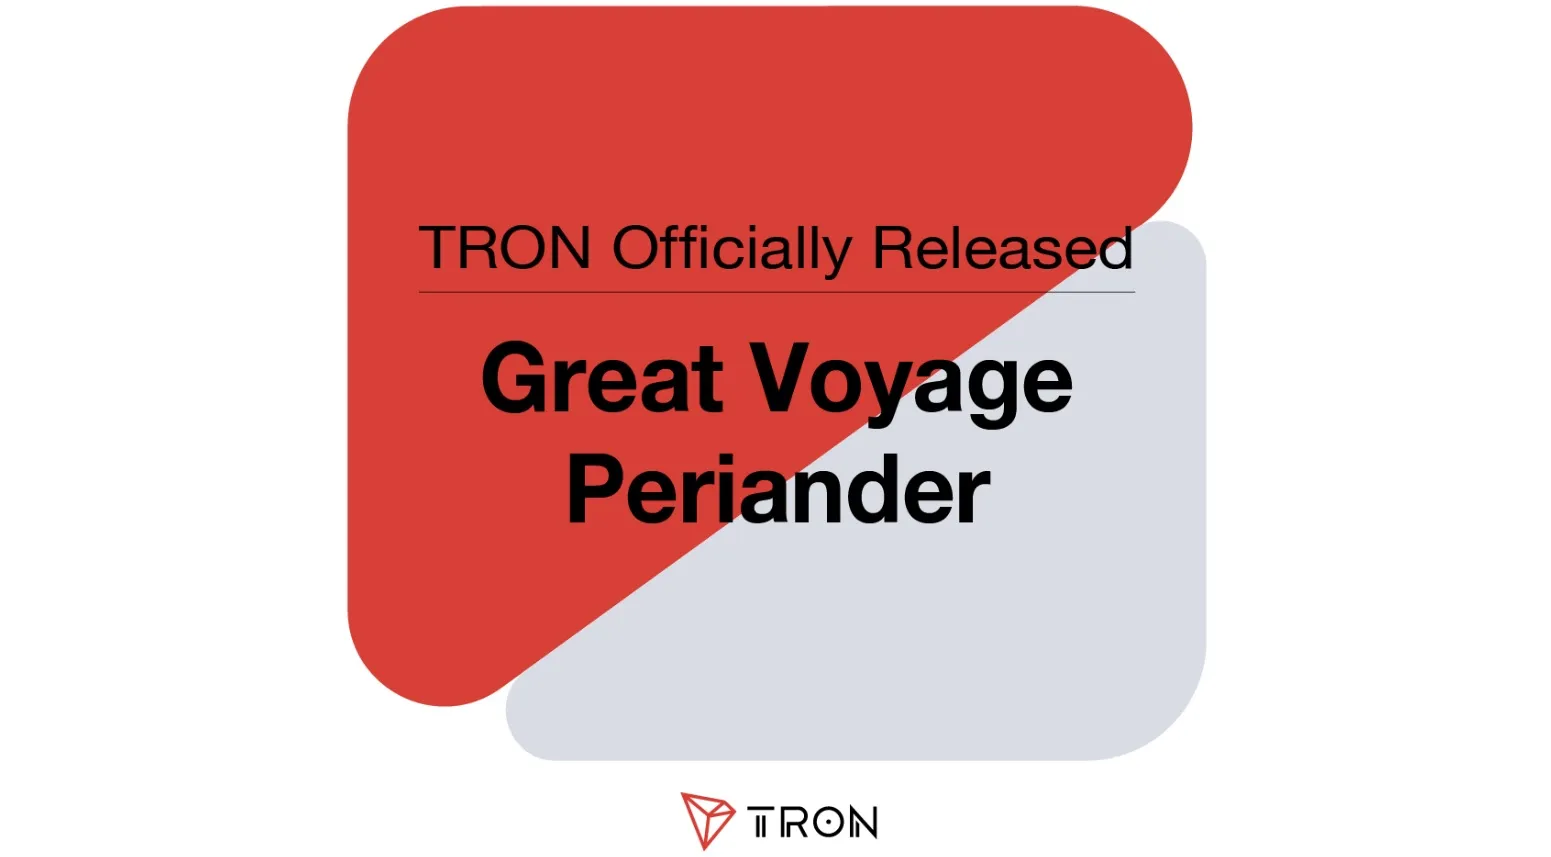 Great Voyage Periander